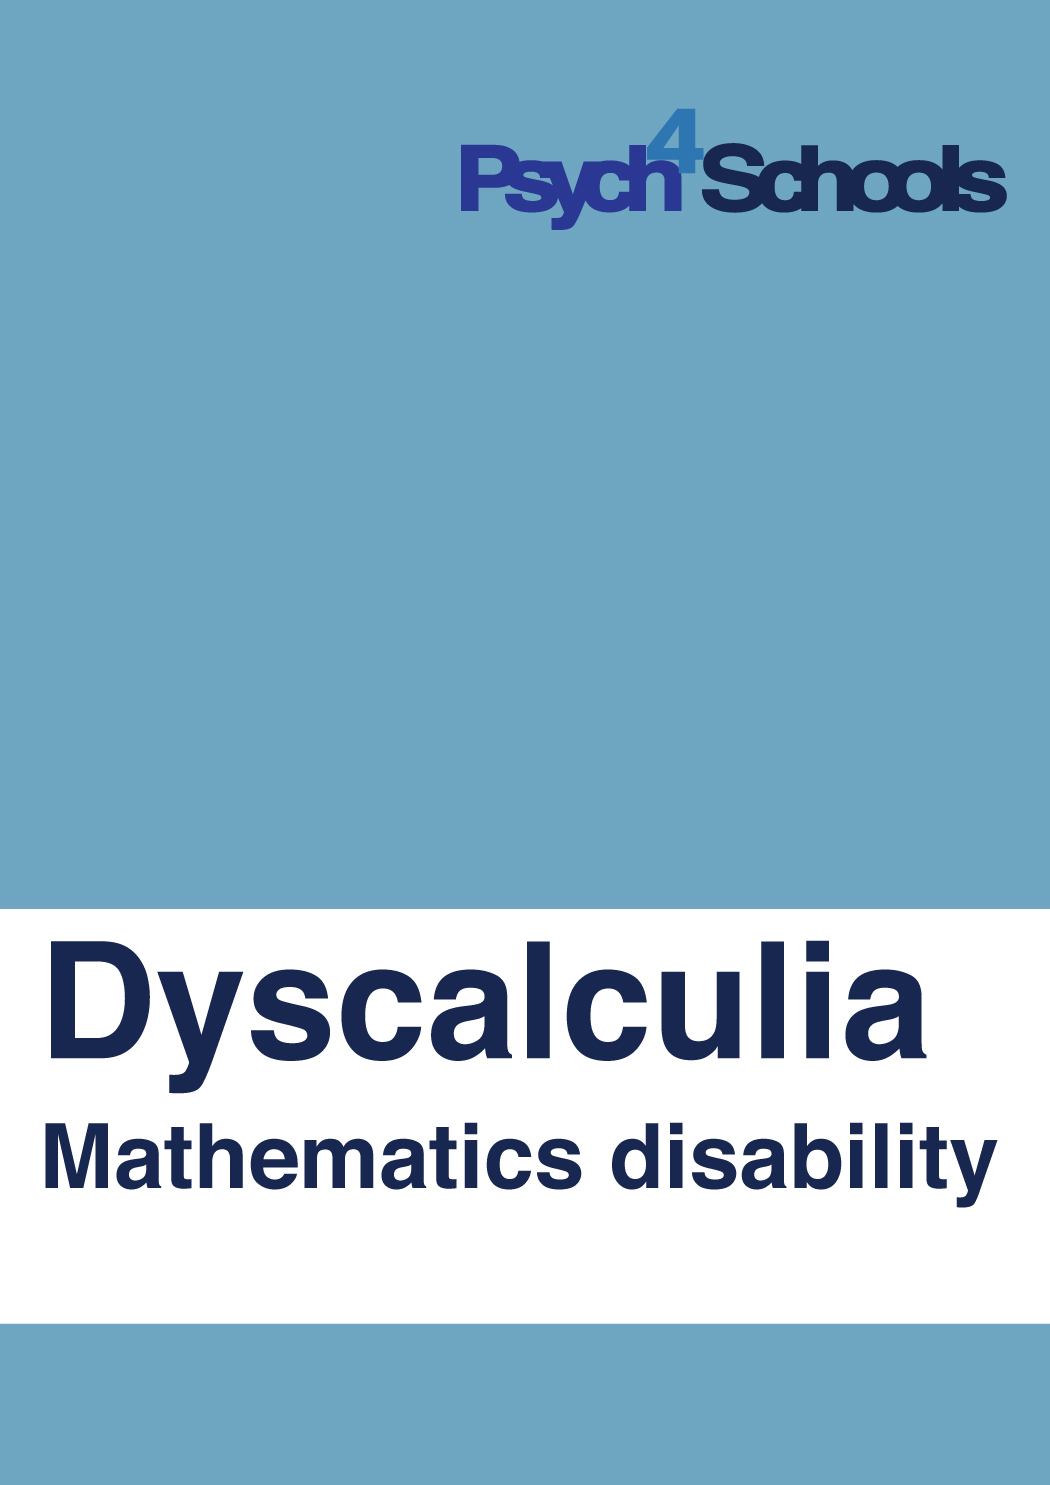 Dyscalculia (mathematics disability)